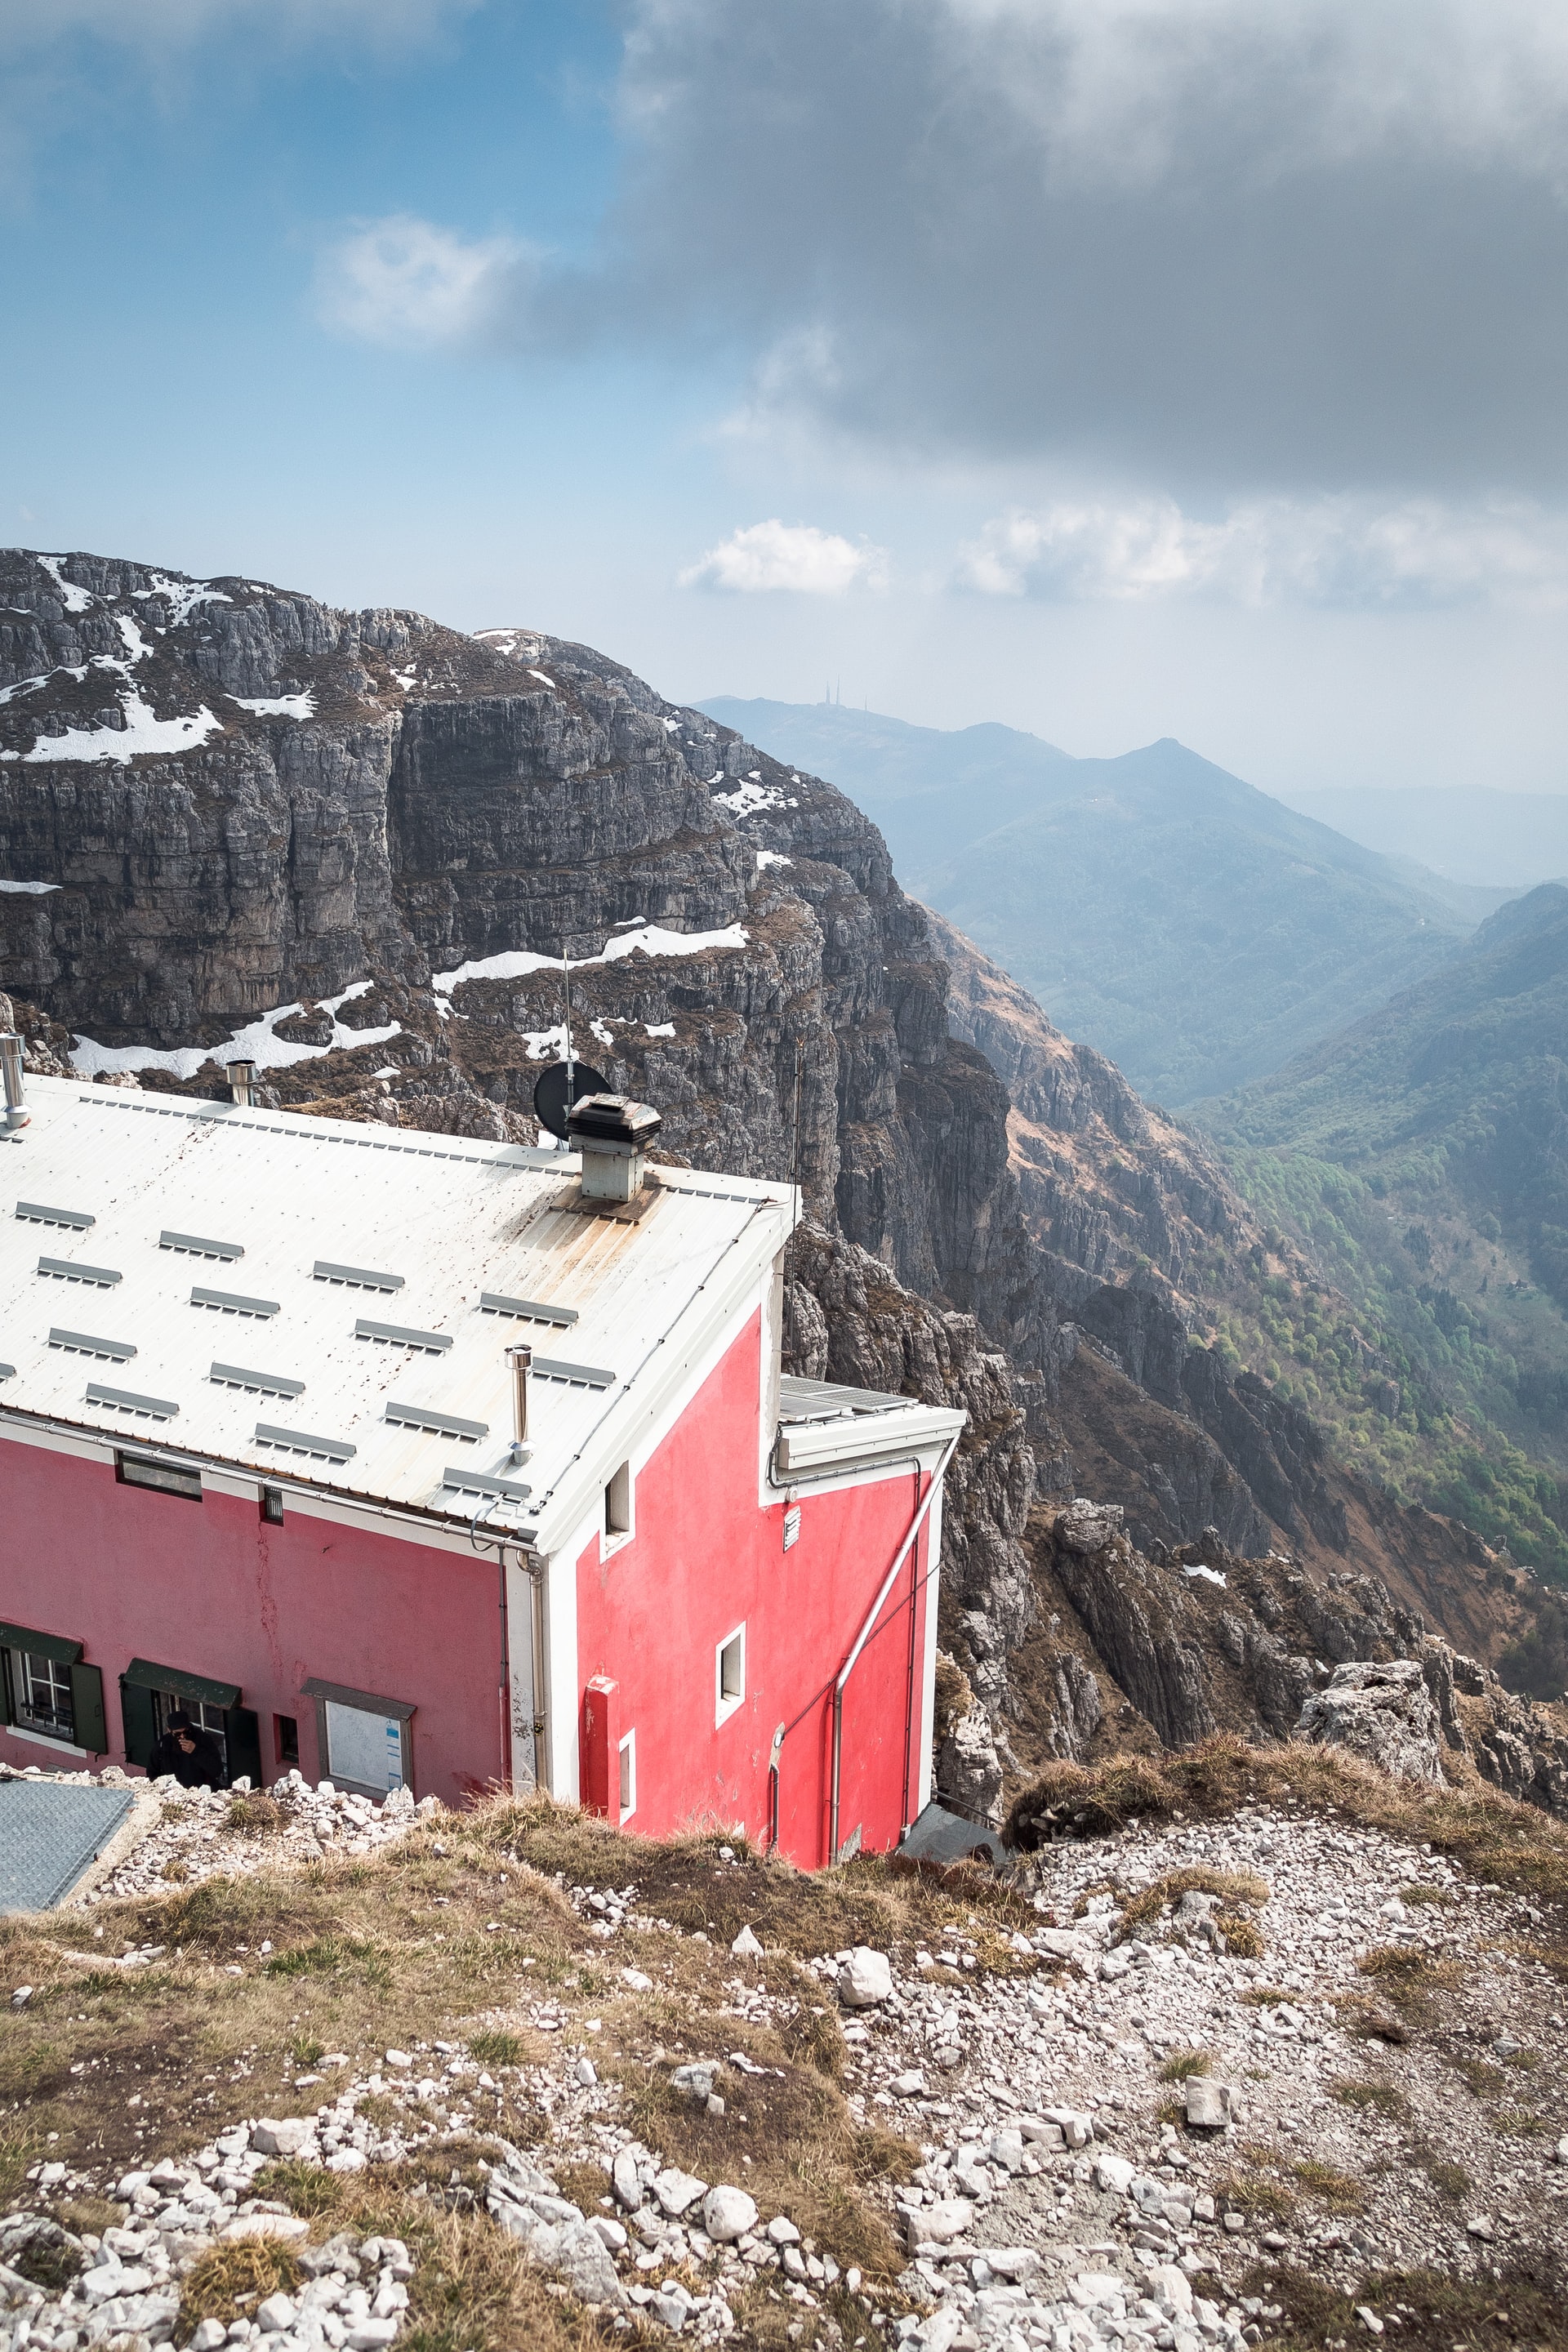 hut-to-hut hikes, rifugio in Italy